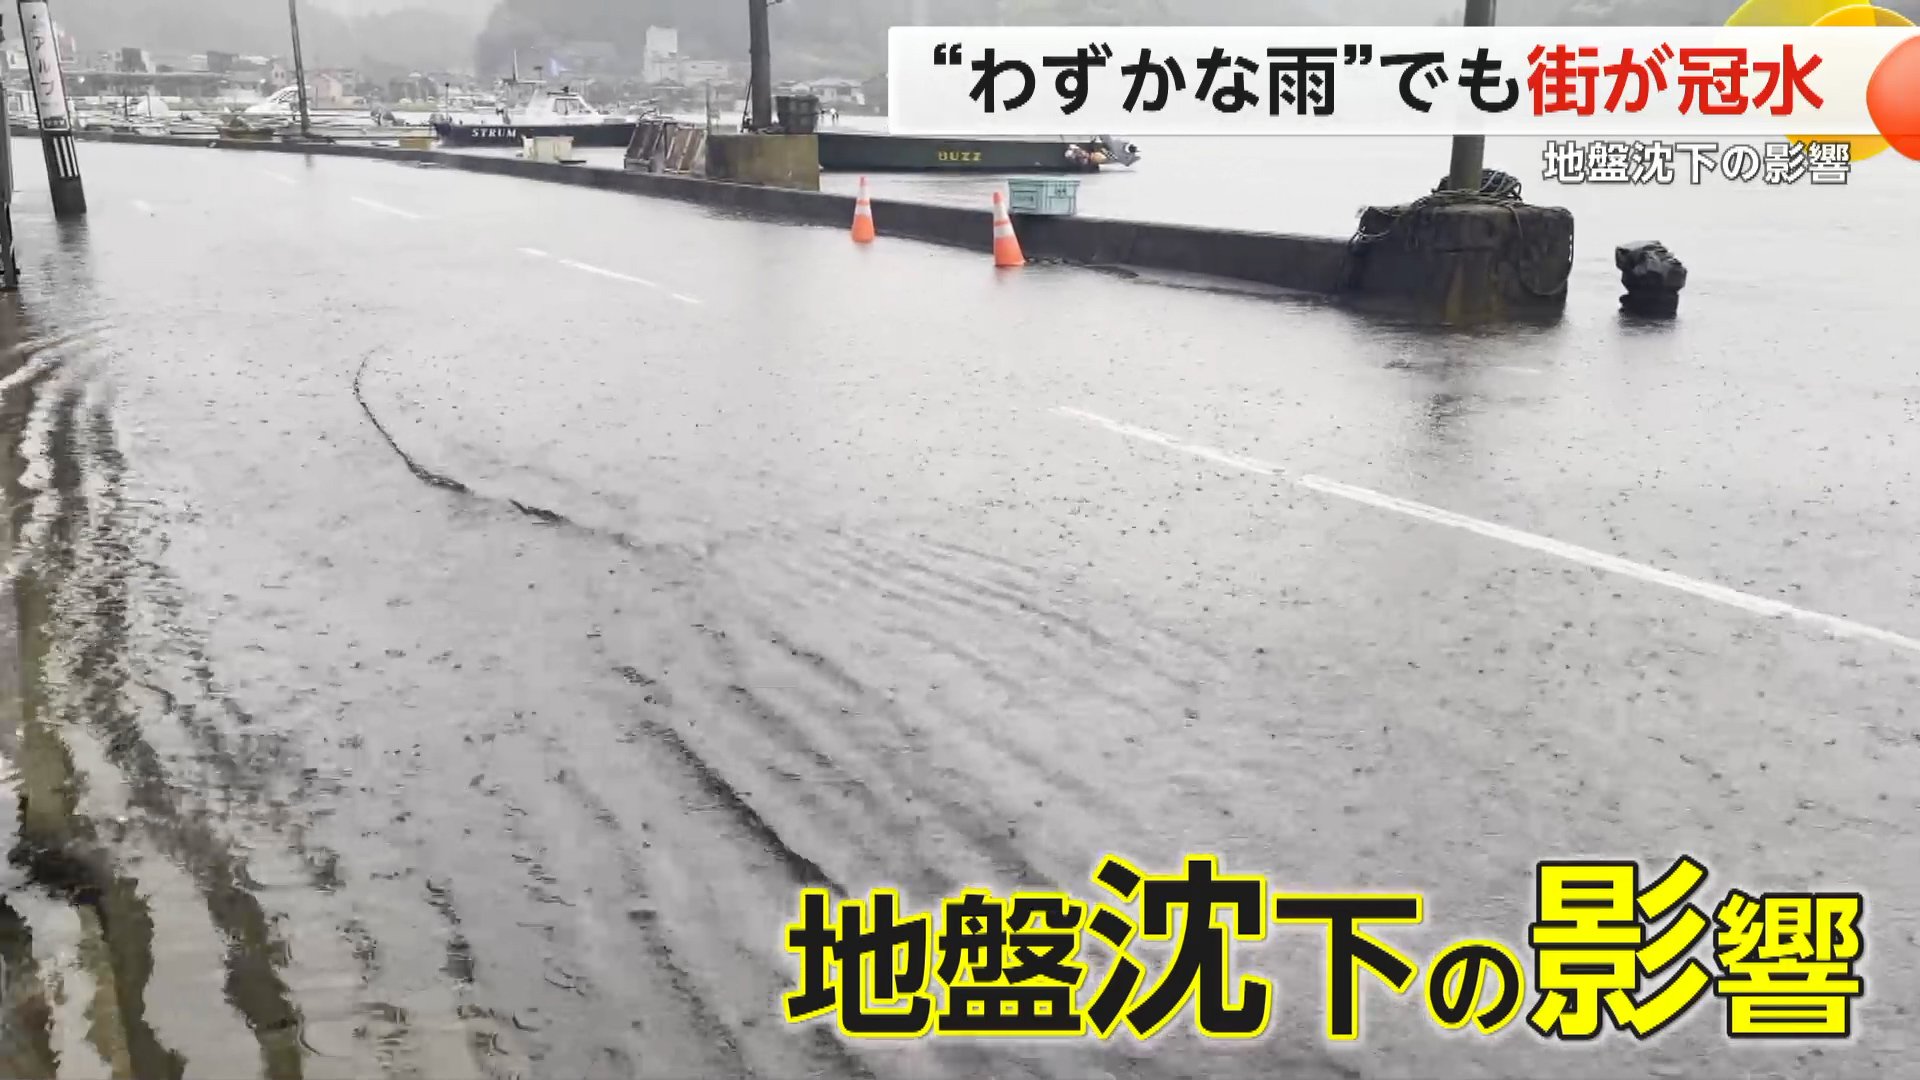 「8月9月の大潮が怖い」能登地震で地盤沈下した七尾市や能登町　少量の雨や潮の満ち引きで家が冠水…石川県の対策も効果限定的